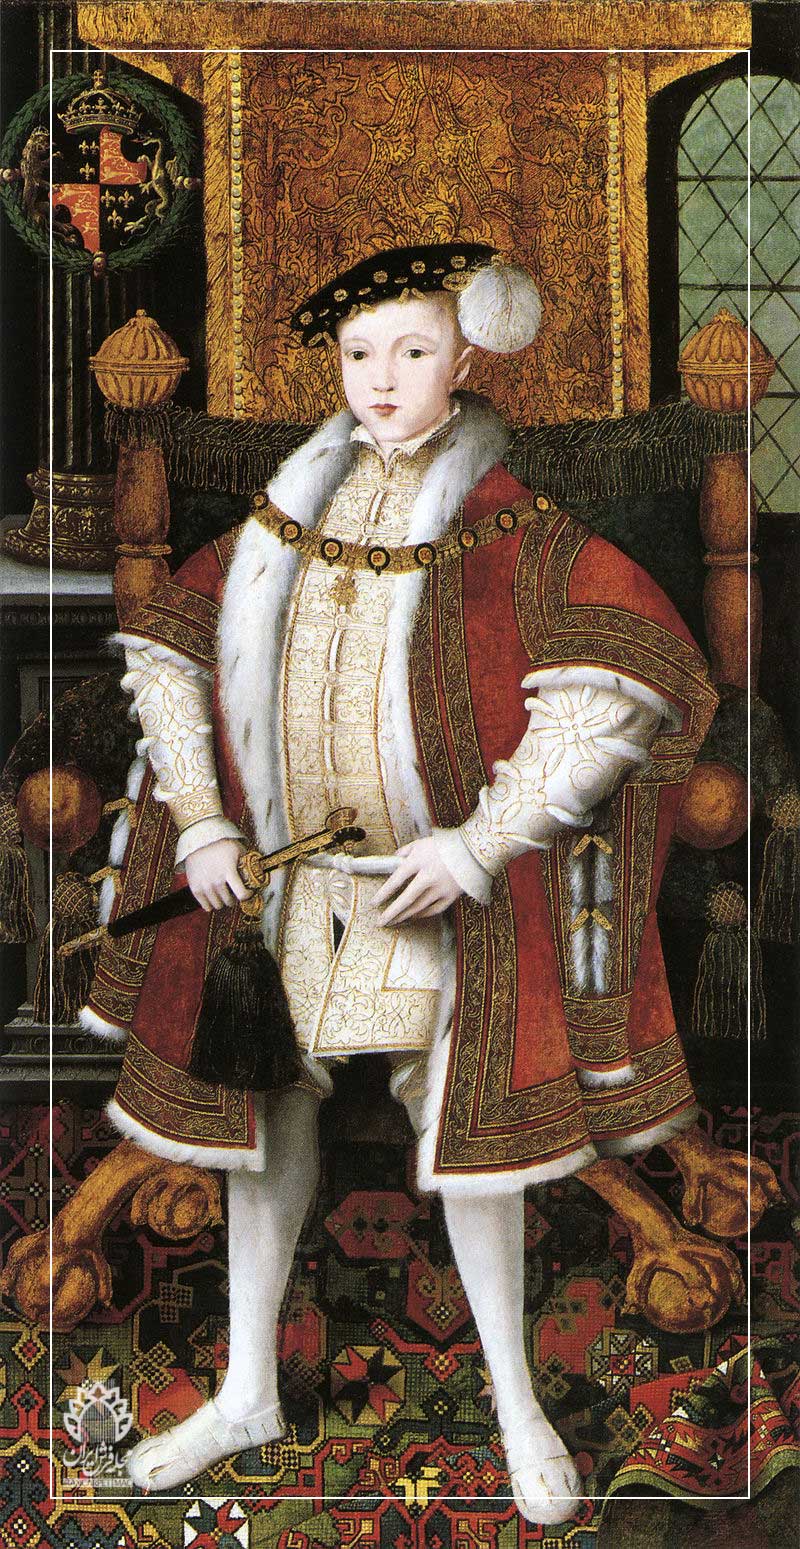 ادوارد ششم روی فرش هولبین ایستاده، حدود ۱۵۴۷